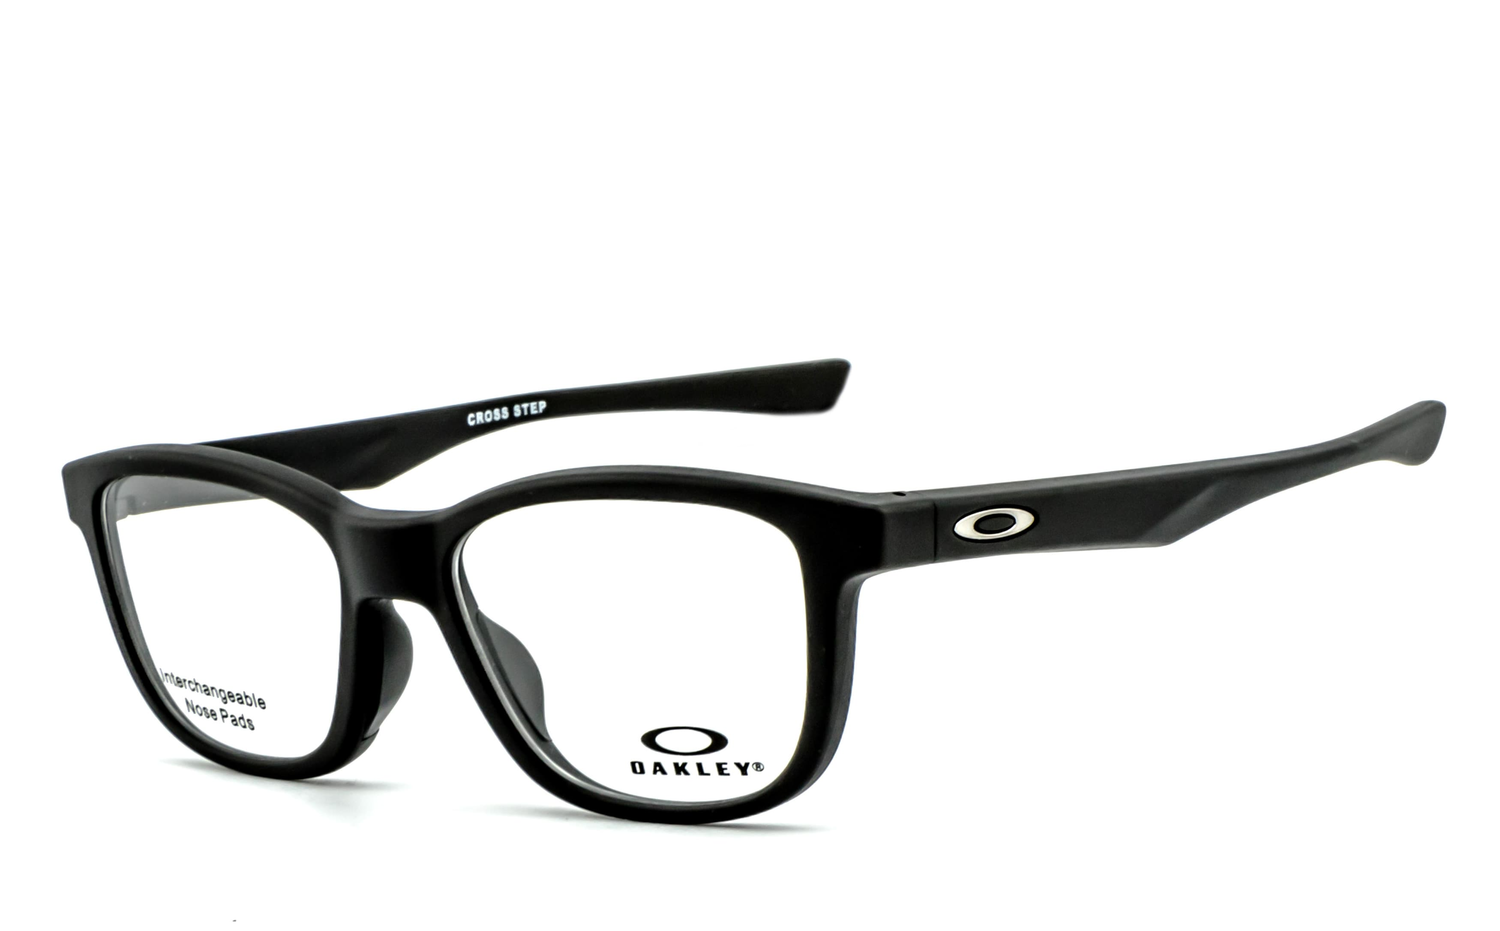 OAKLEY | Cross Step (TruBridge) - OX8106  Brille, Brillengestell, Brillenfassung, Korrekturbrille, Korrekturfassung